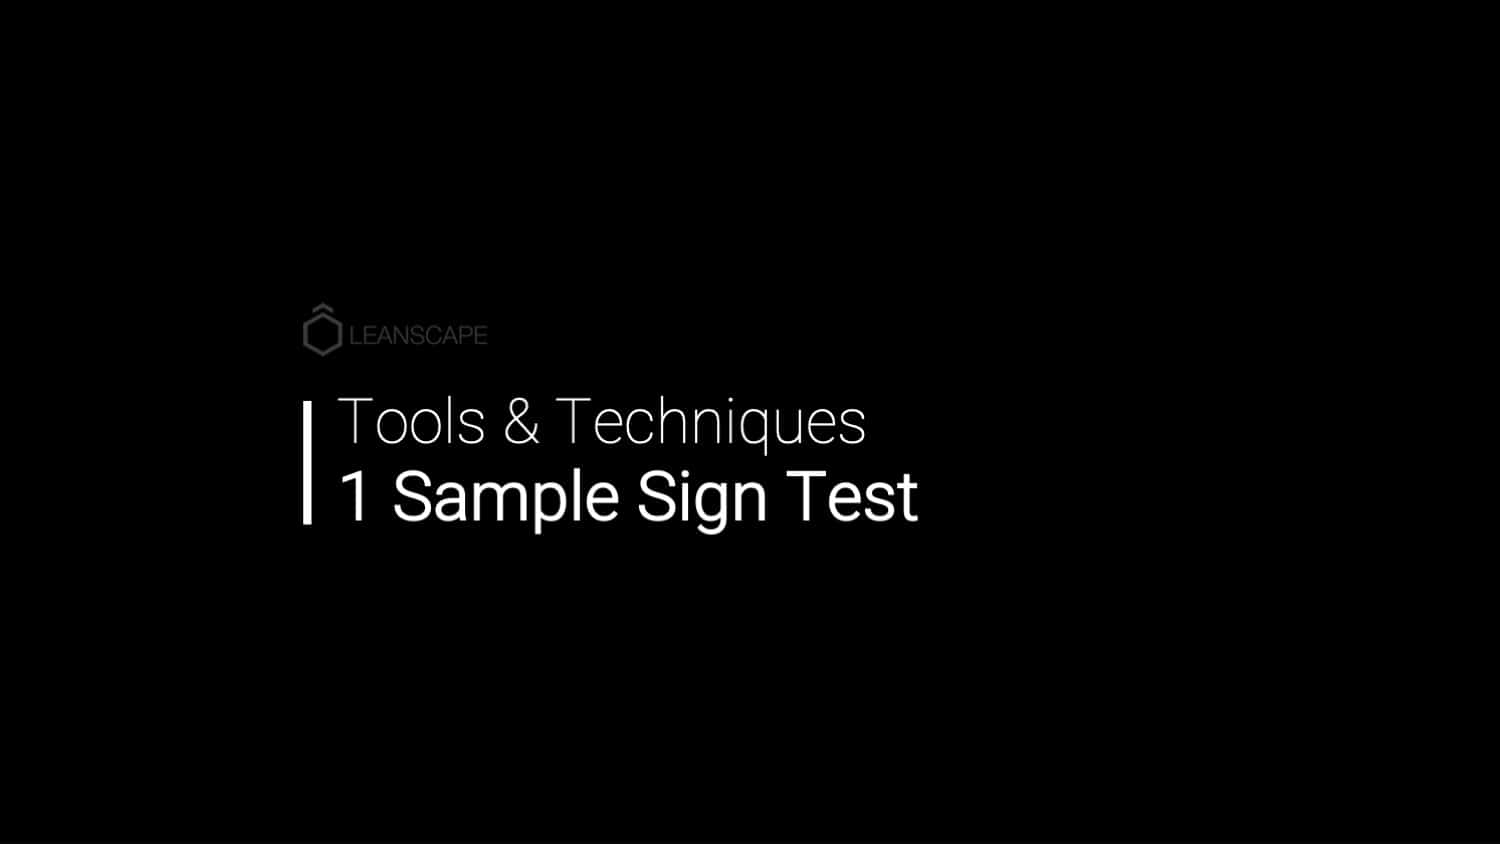 1 Sample Sign Test